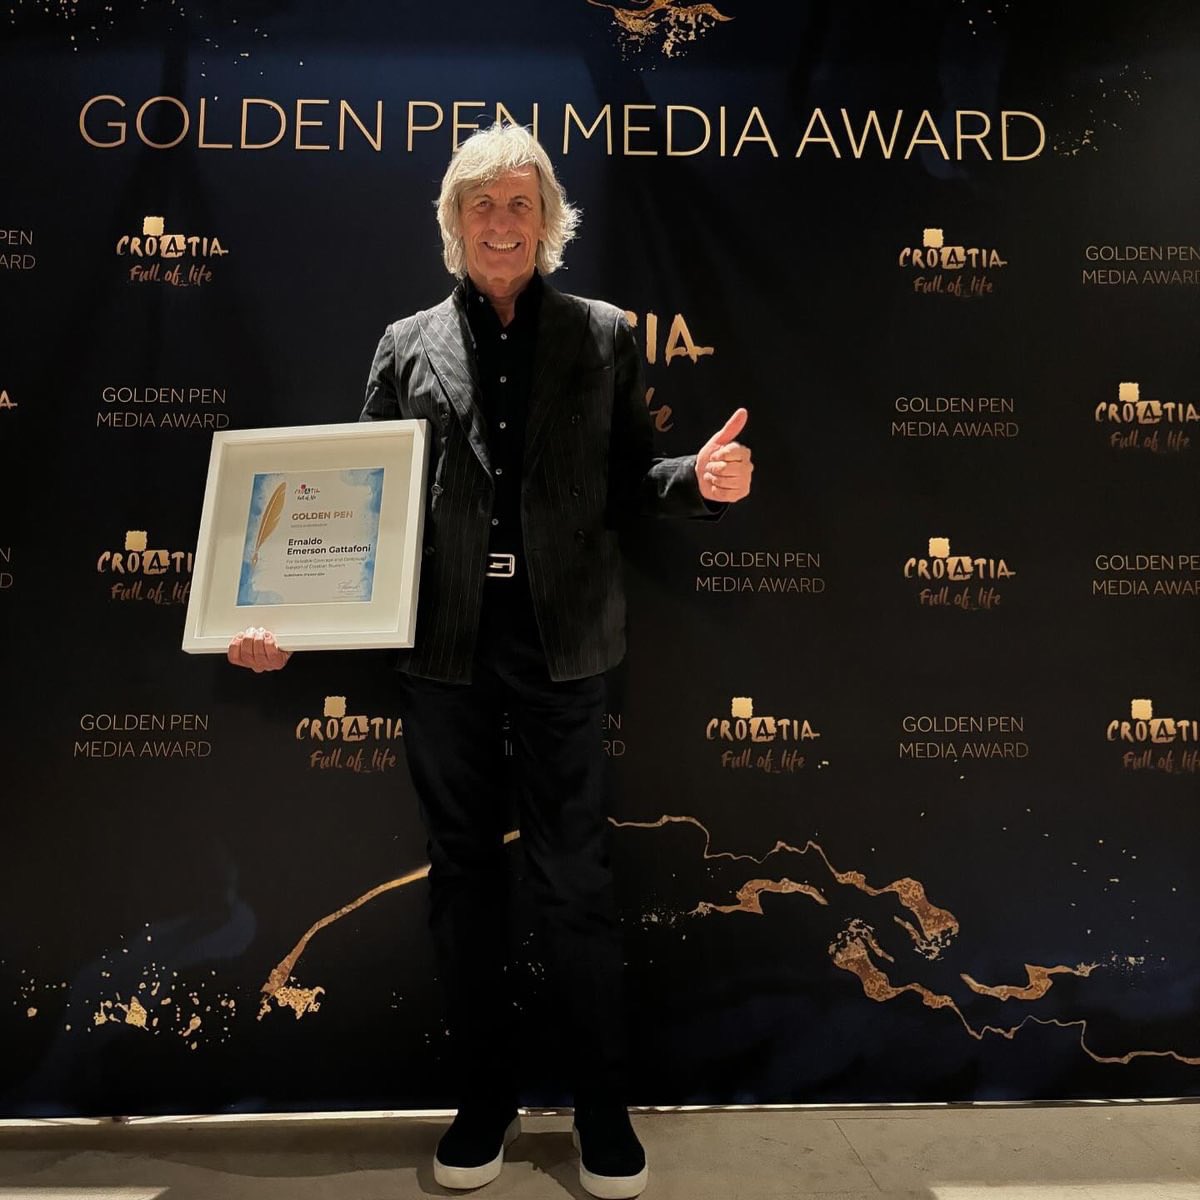 Ieri sera, nella splendida #dubrovnik, in occasione dei 20 anni del GoldenPen Awards abbiamo ricevuto l’onorificenza di Media Ambassadors of Croatia, un grande onore ! 
Grazie Croazia 🇭🇷🫶 @dreamsroad_tv @valedreamsroad @emersontheroad @gekofilm